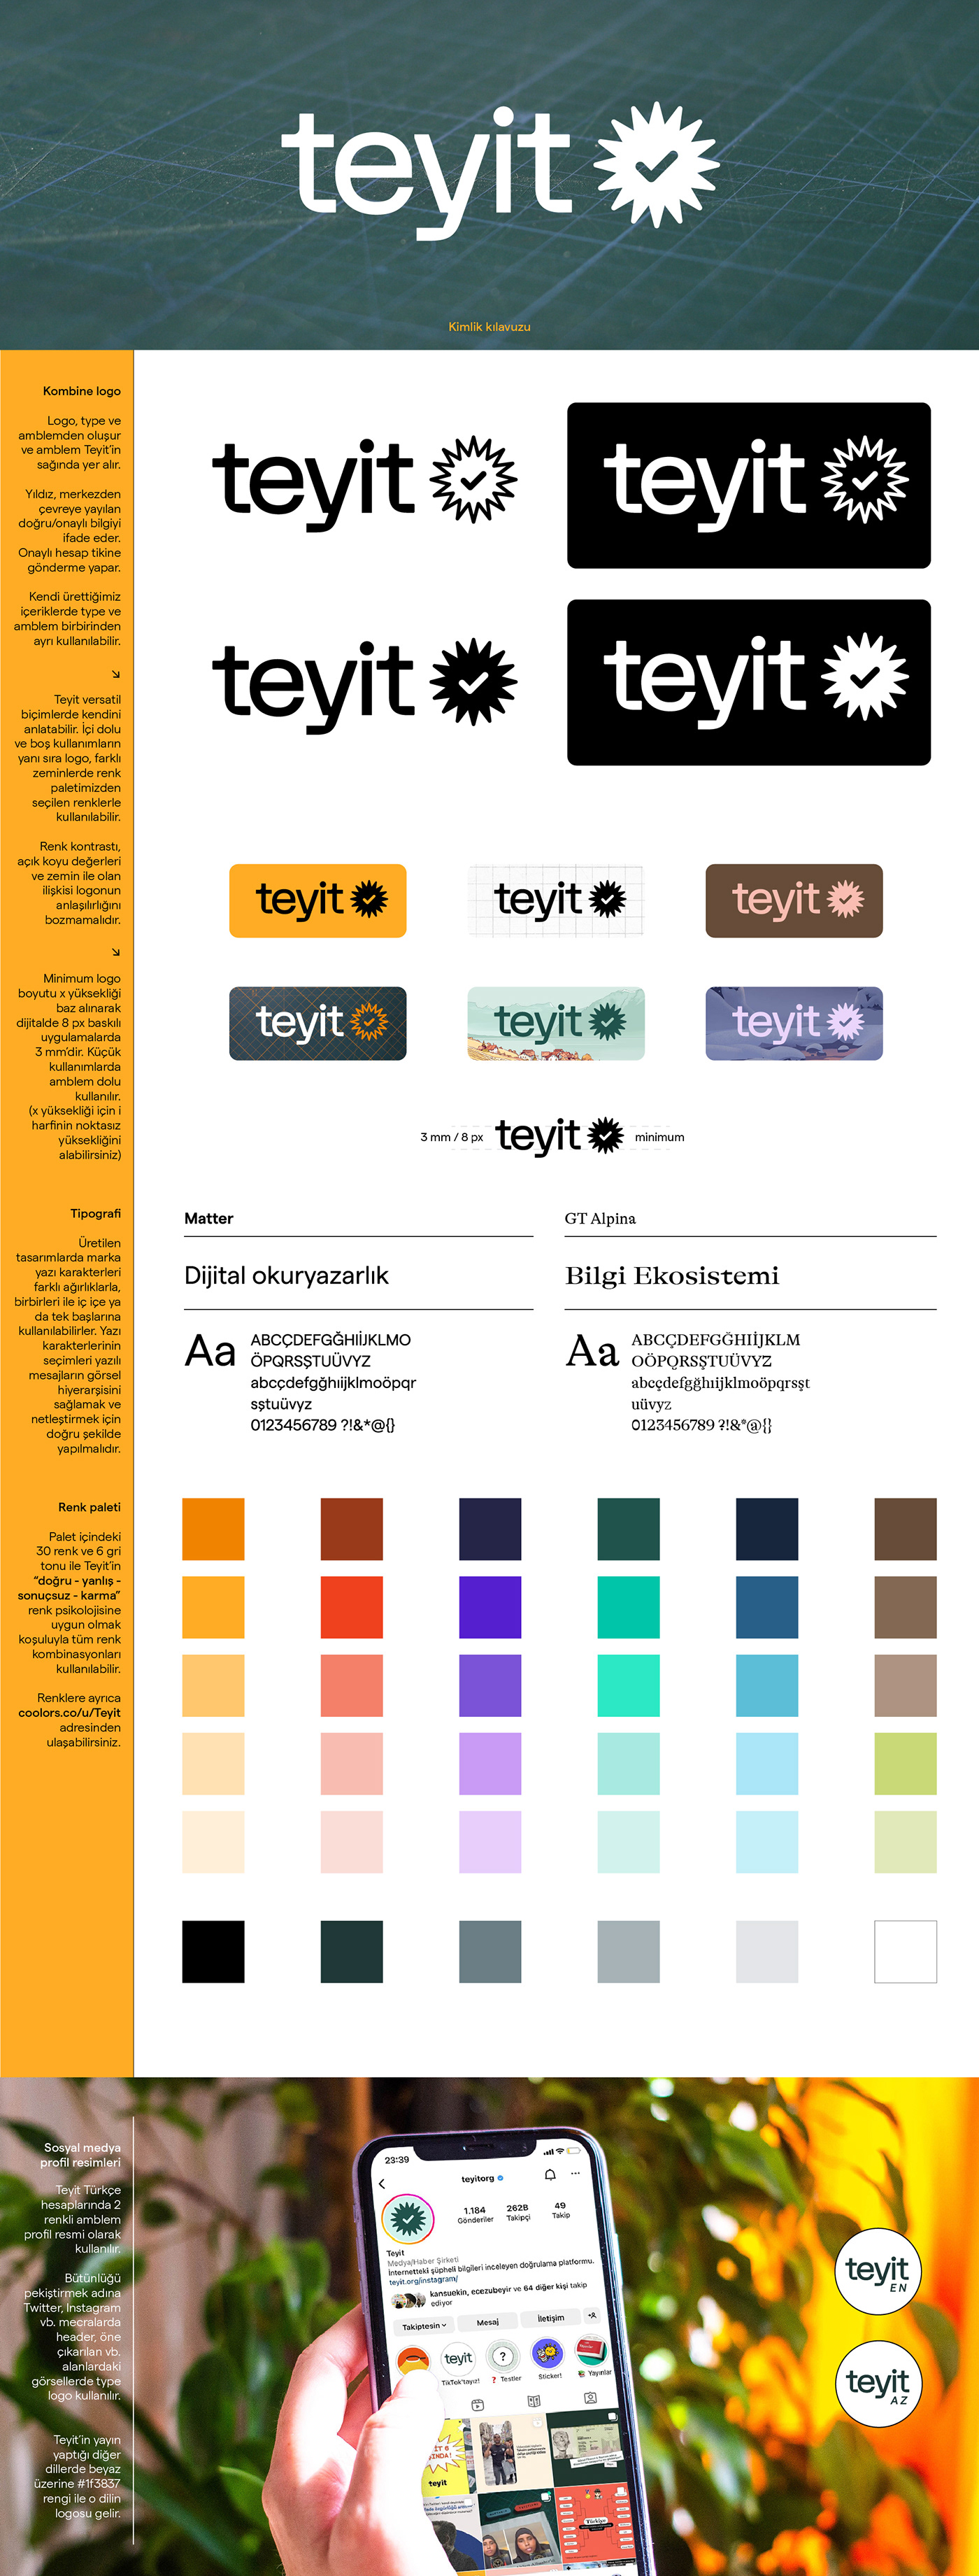 adobe illustrator Brand Design brand identity branding  identity Logo Design Logotype teyit typography   visual identity